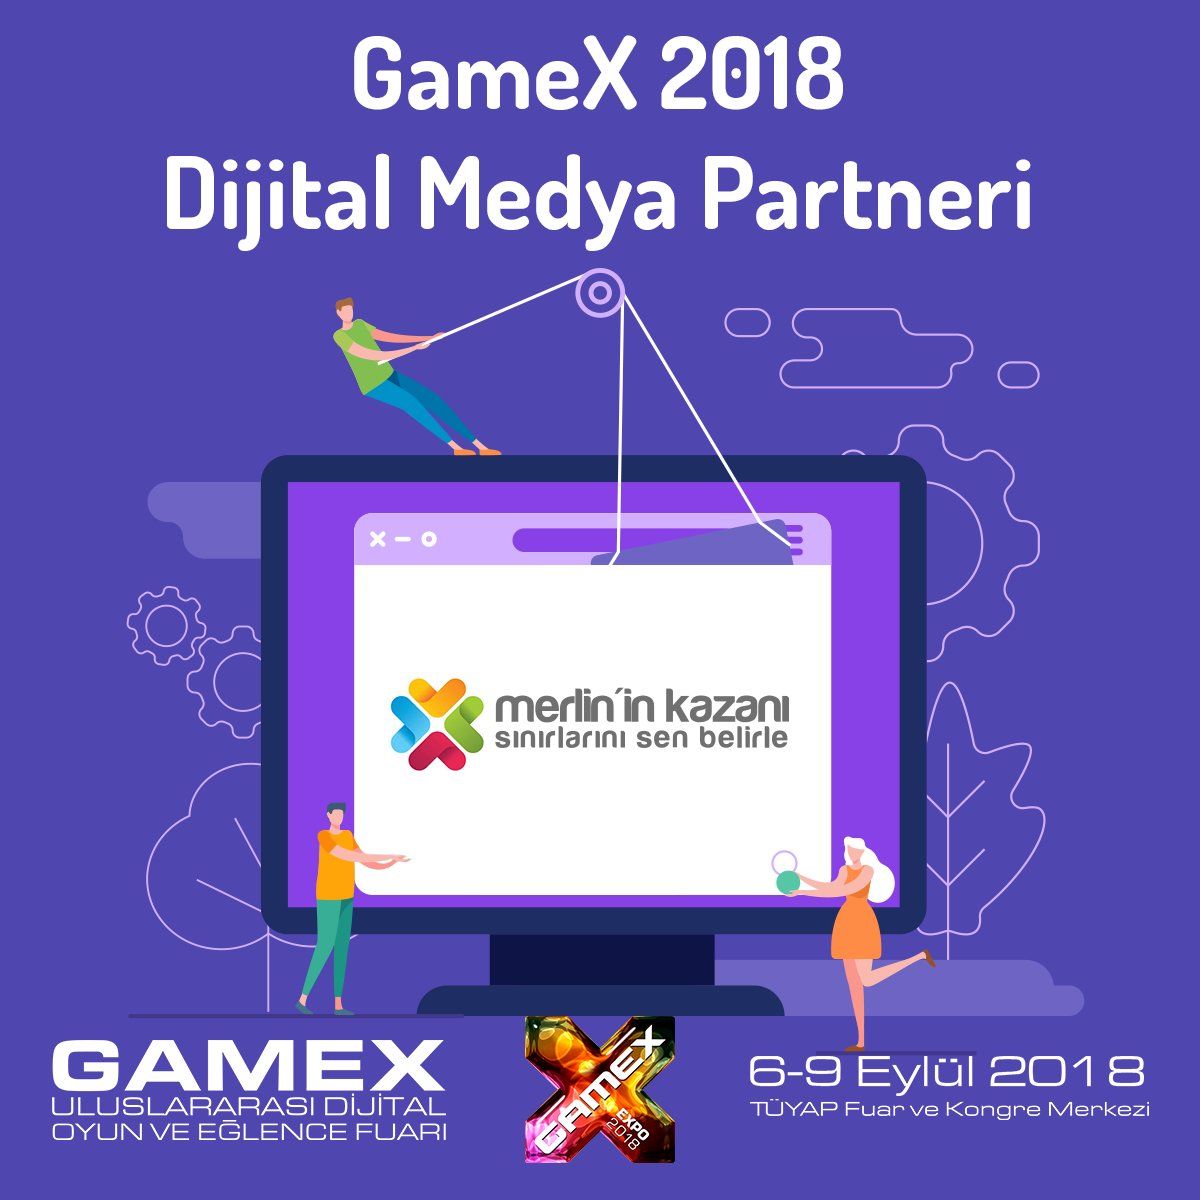 Gamex 2018 oyun fuarının dijital medya partneri olduk